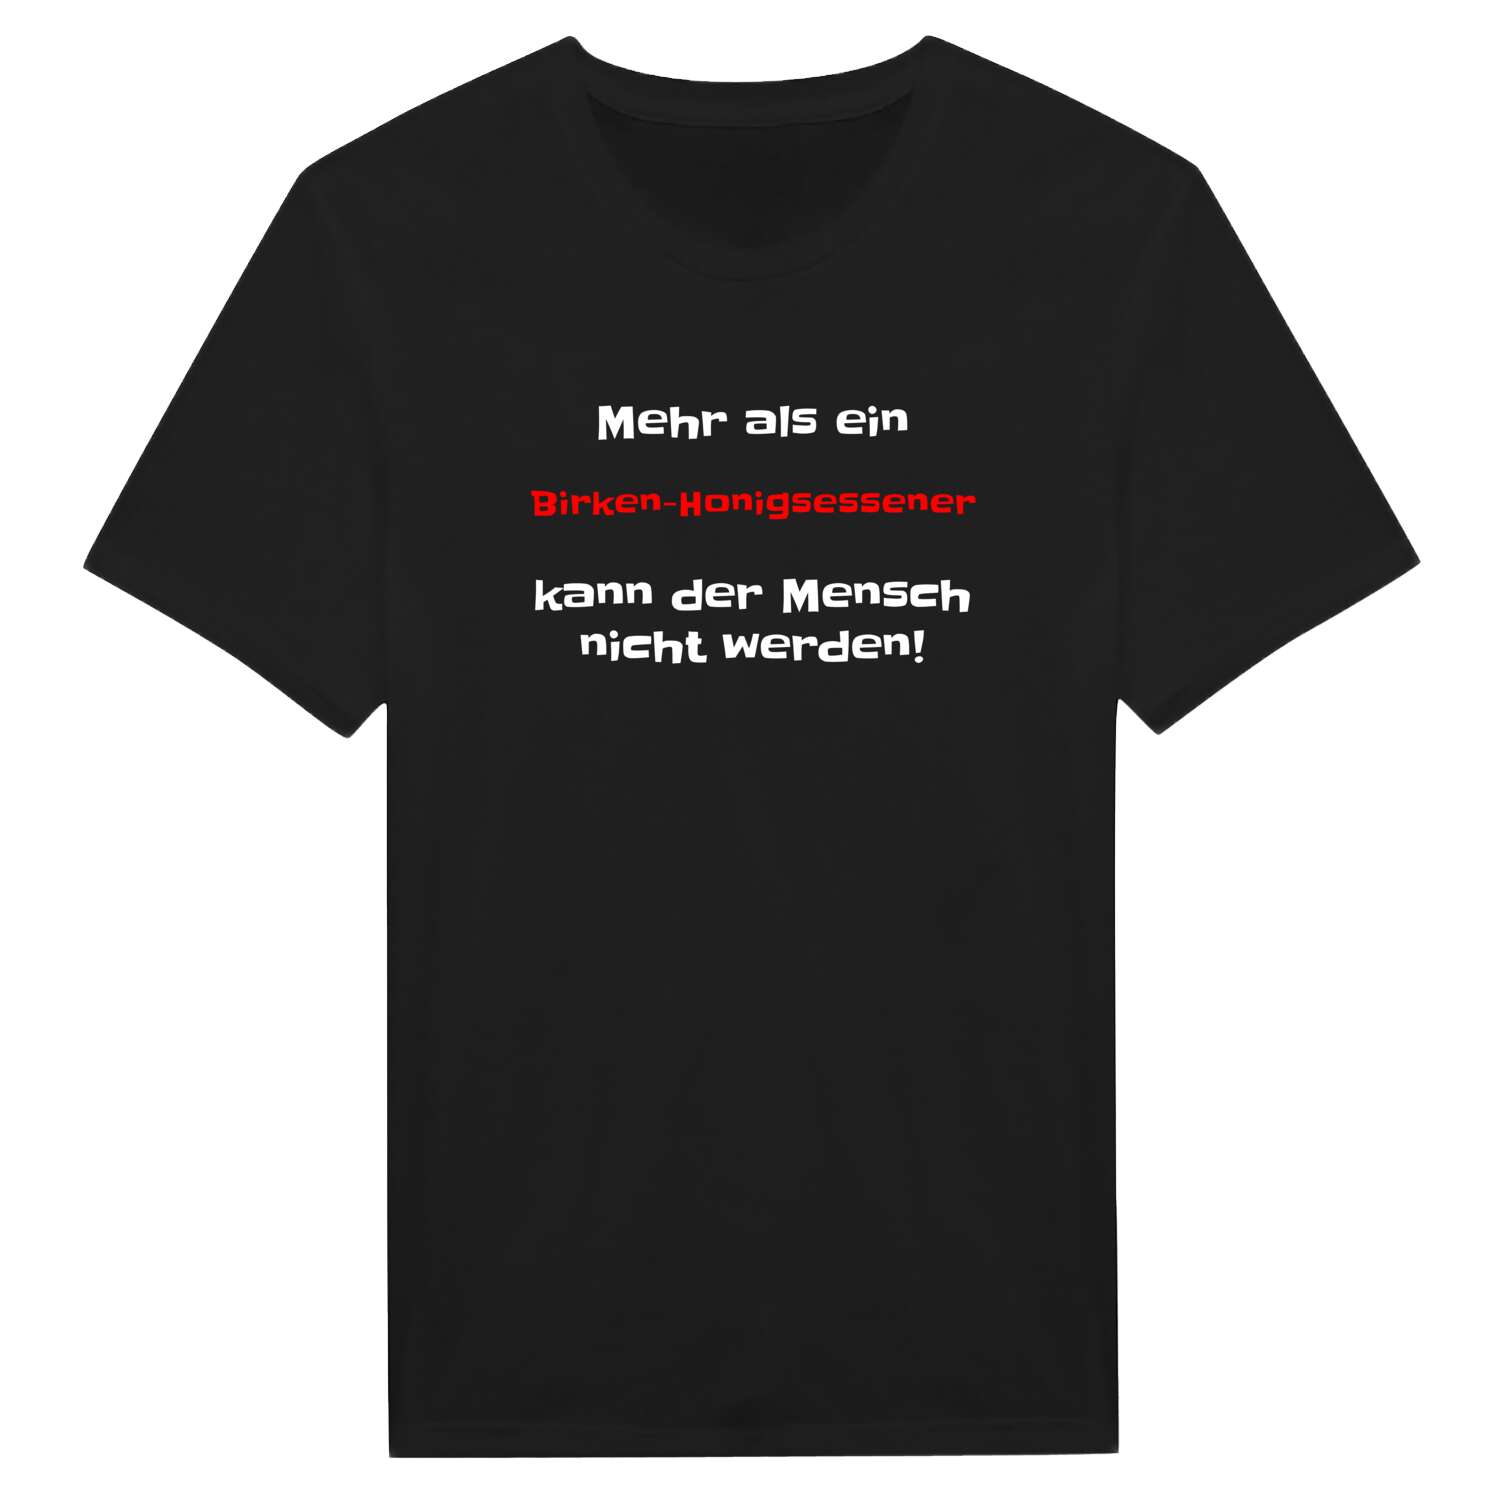 Birken-Honigsessen T-Shirt »Mehr als ein«